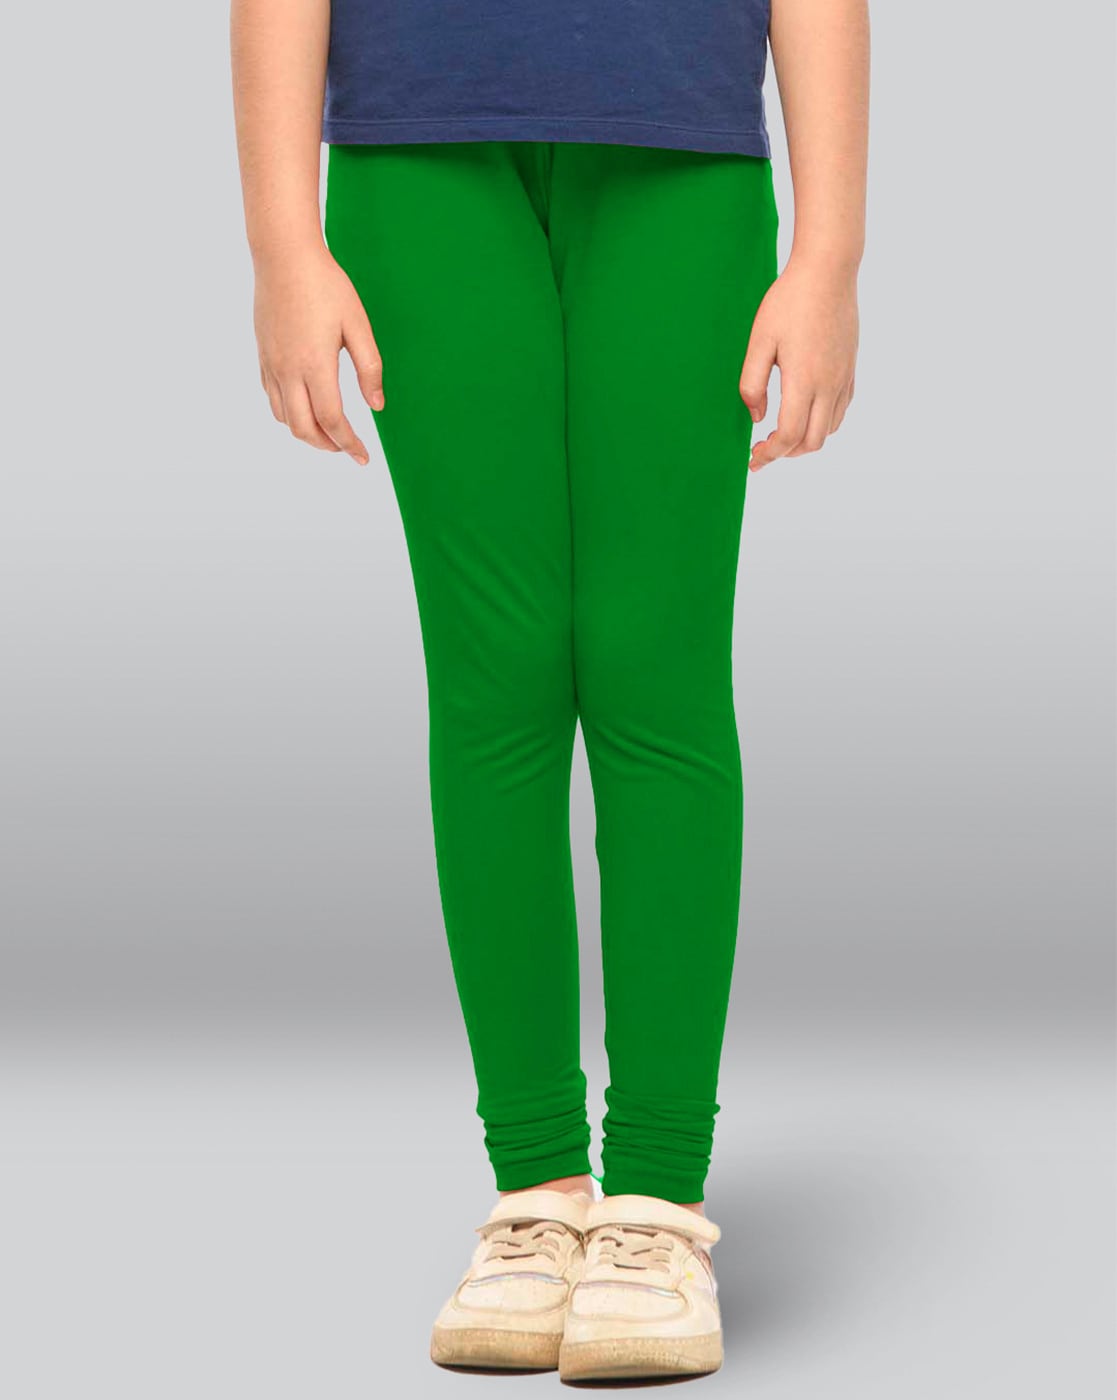 Buy Green Leggings for Girls by LYRA Online